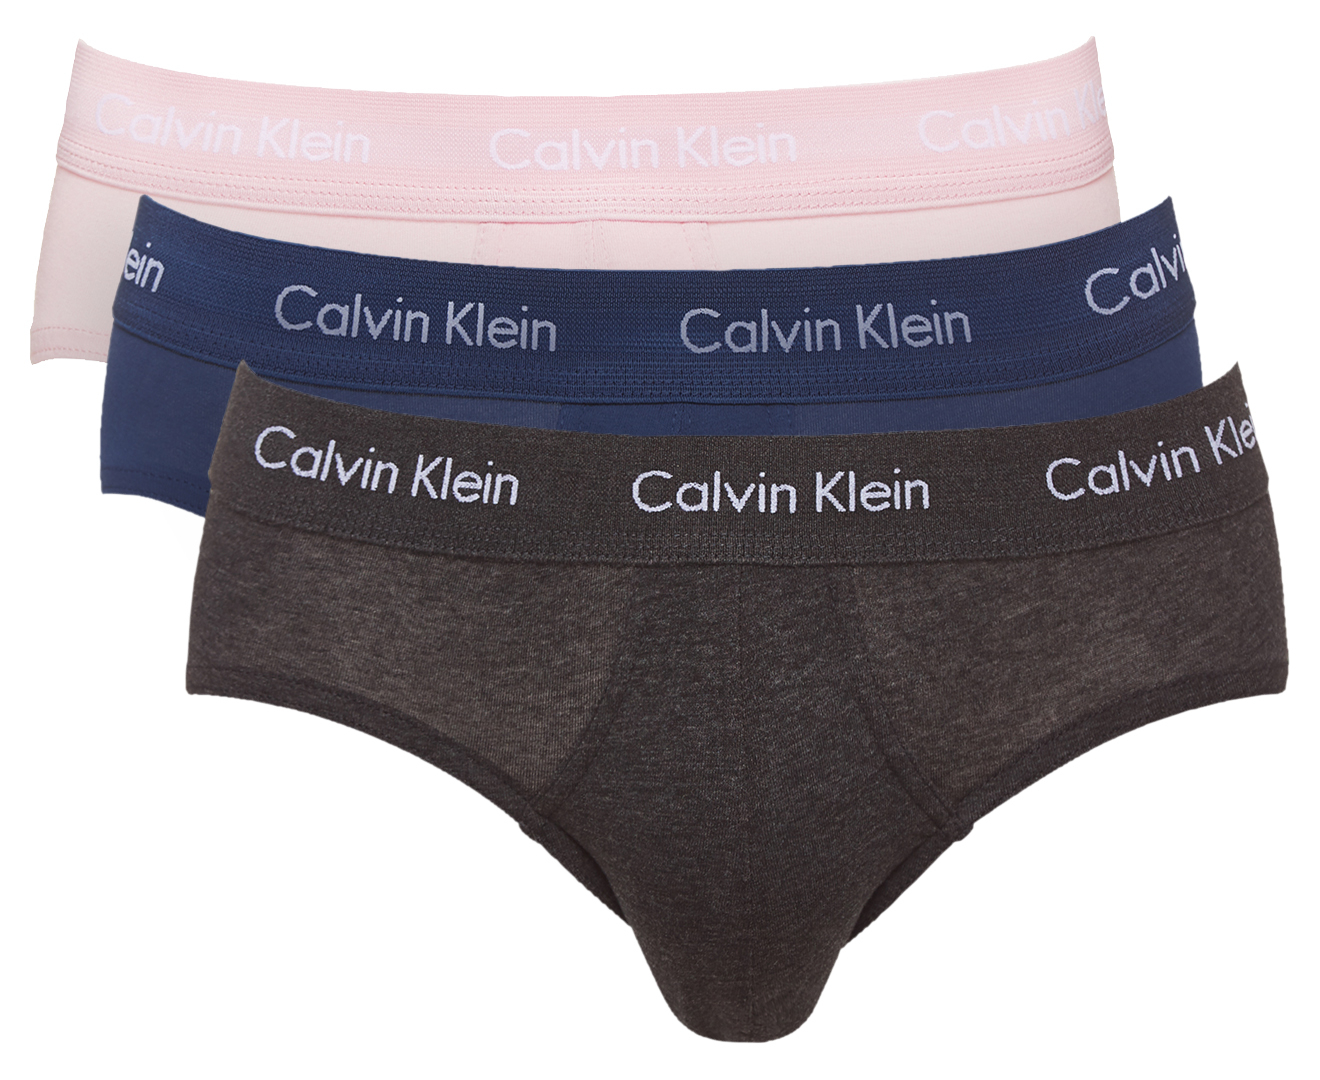 Calvin Klein Men's Cotton Stretch Hip Brief 3-Pack - Black